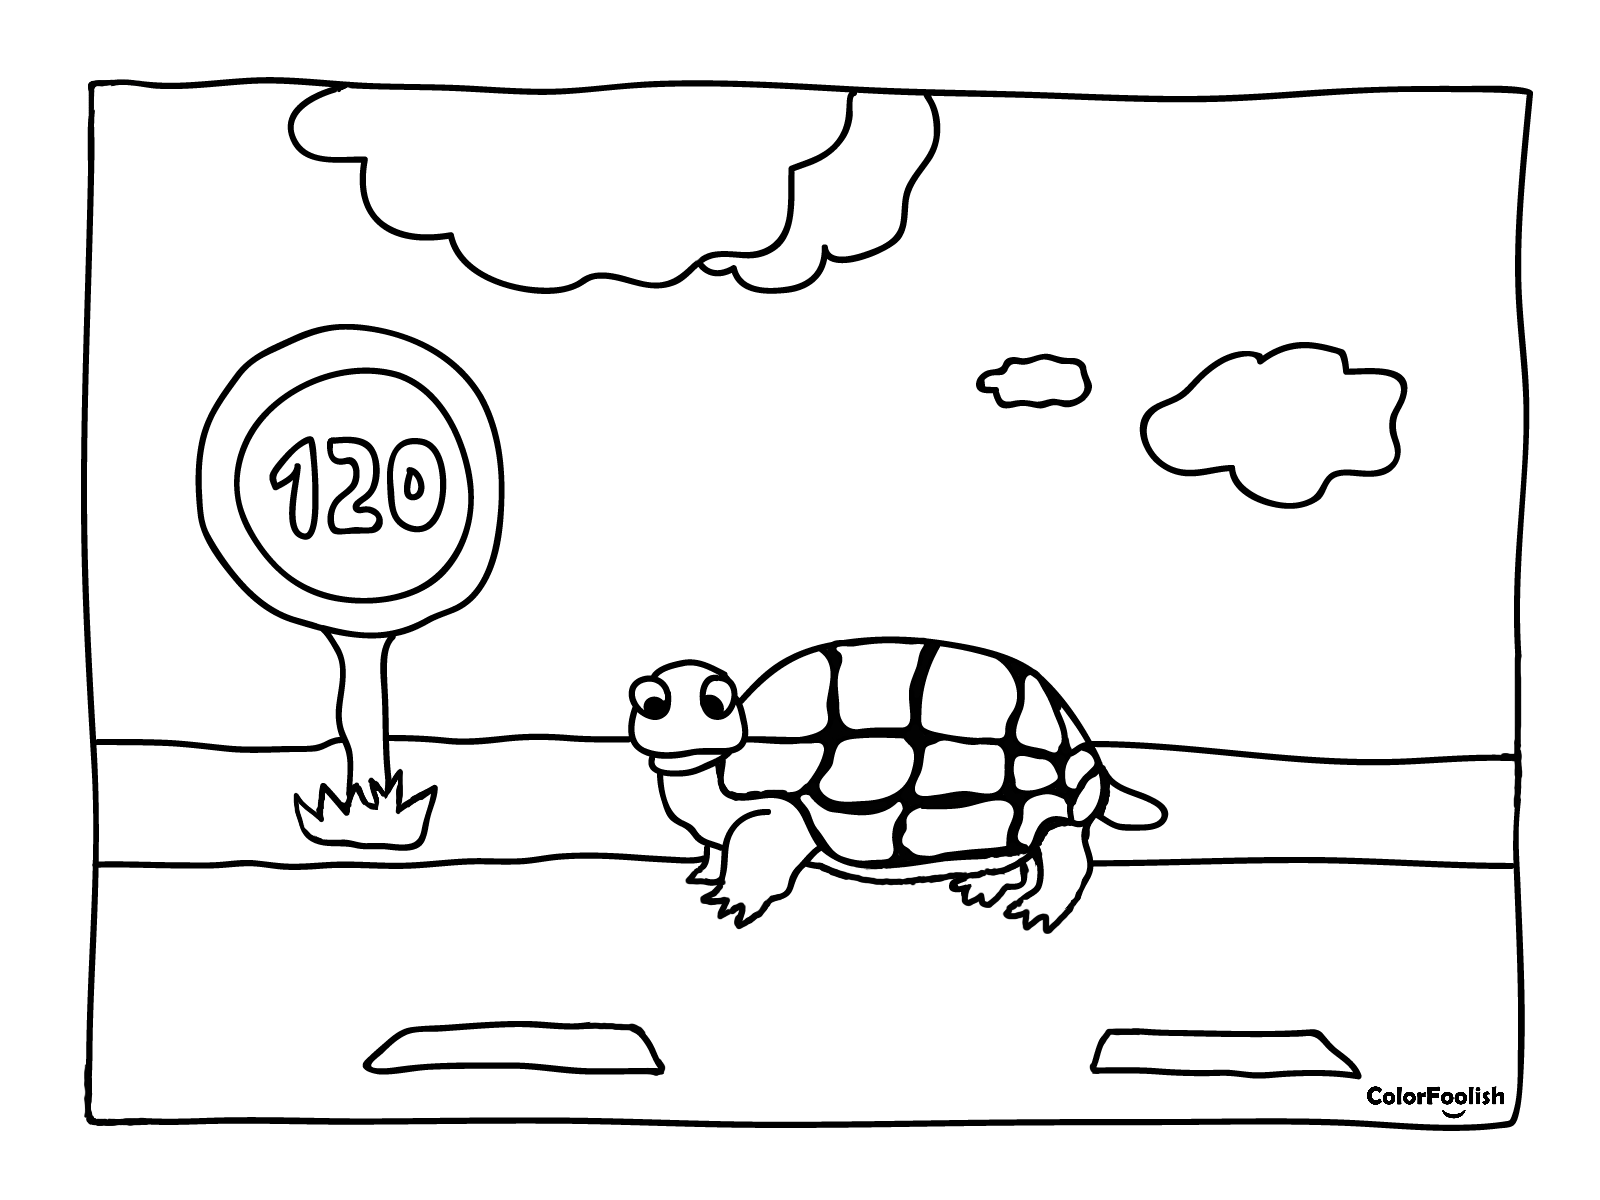 Farvelægning af en skildpadde under hastighedsgrænsen